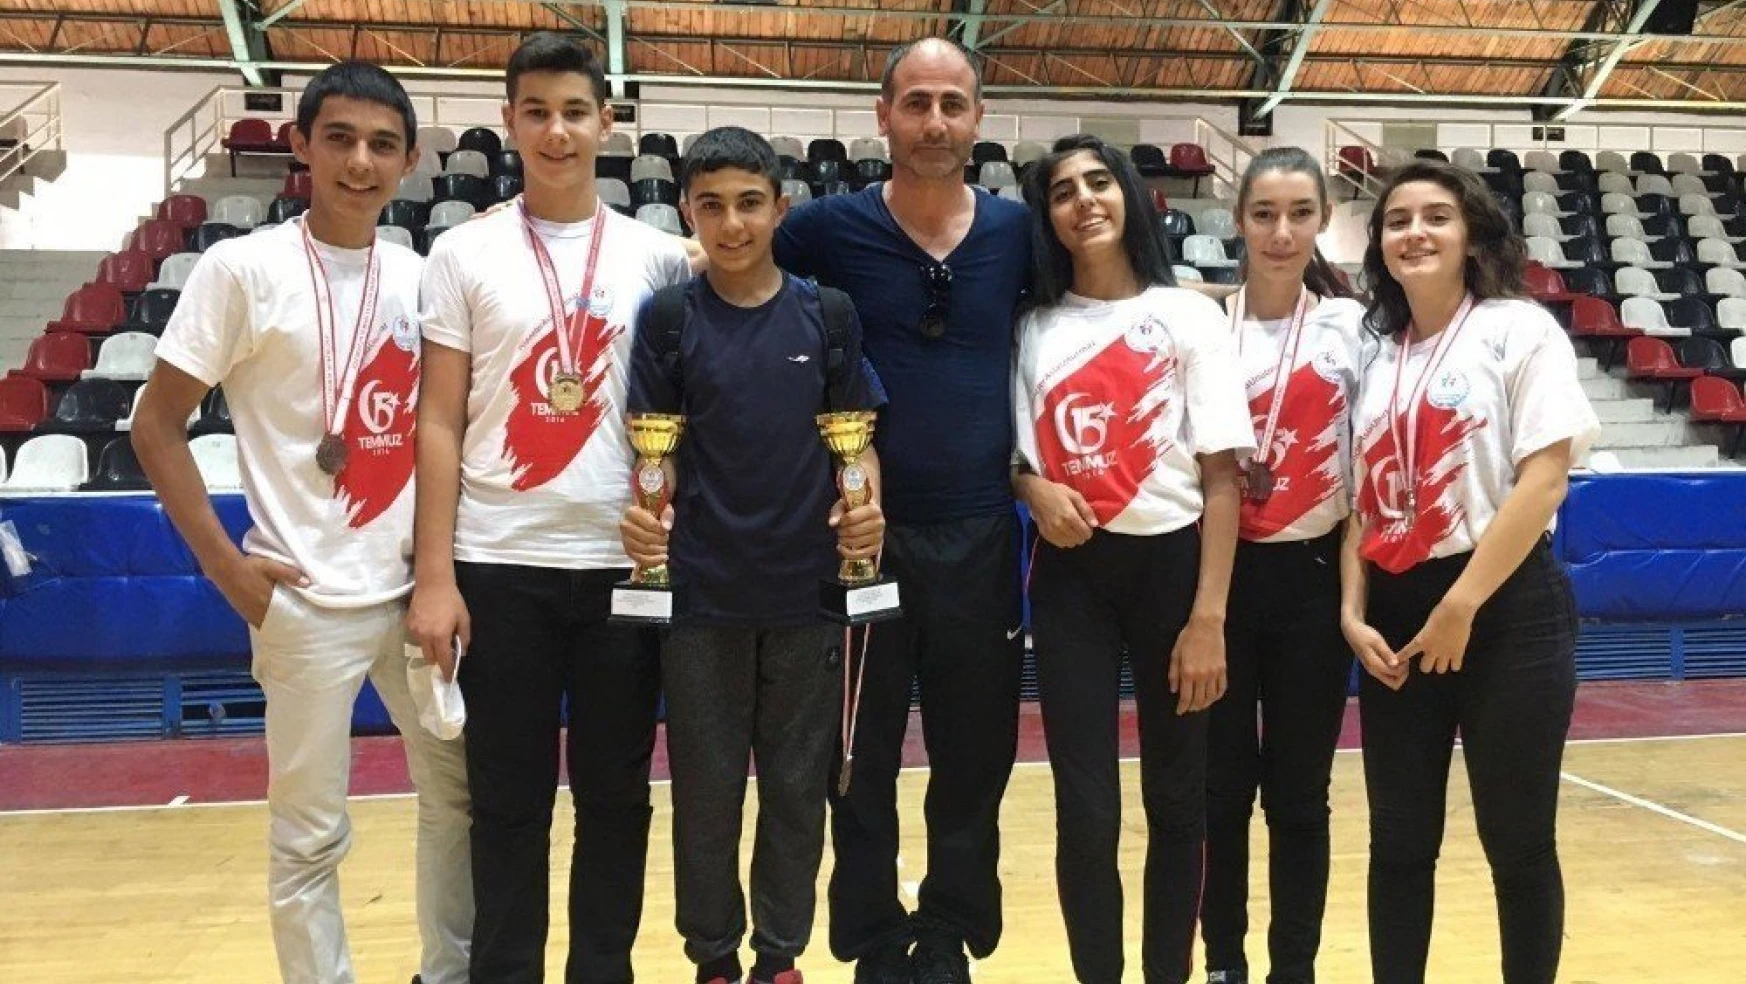 Büyükşehir Belediyesi tekvando takımı Antalya'da 3. oldu
